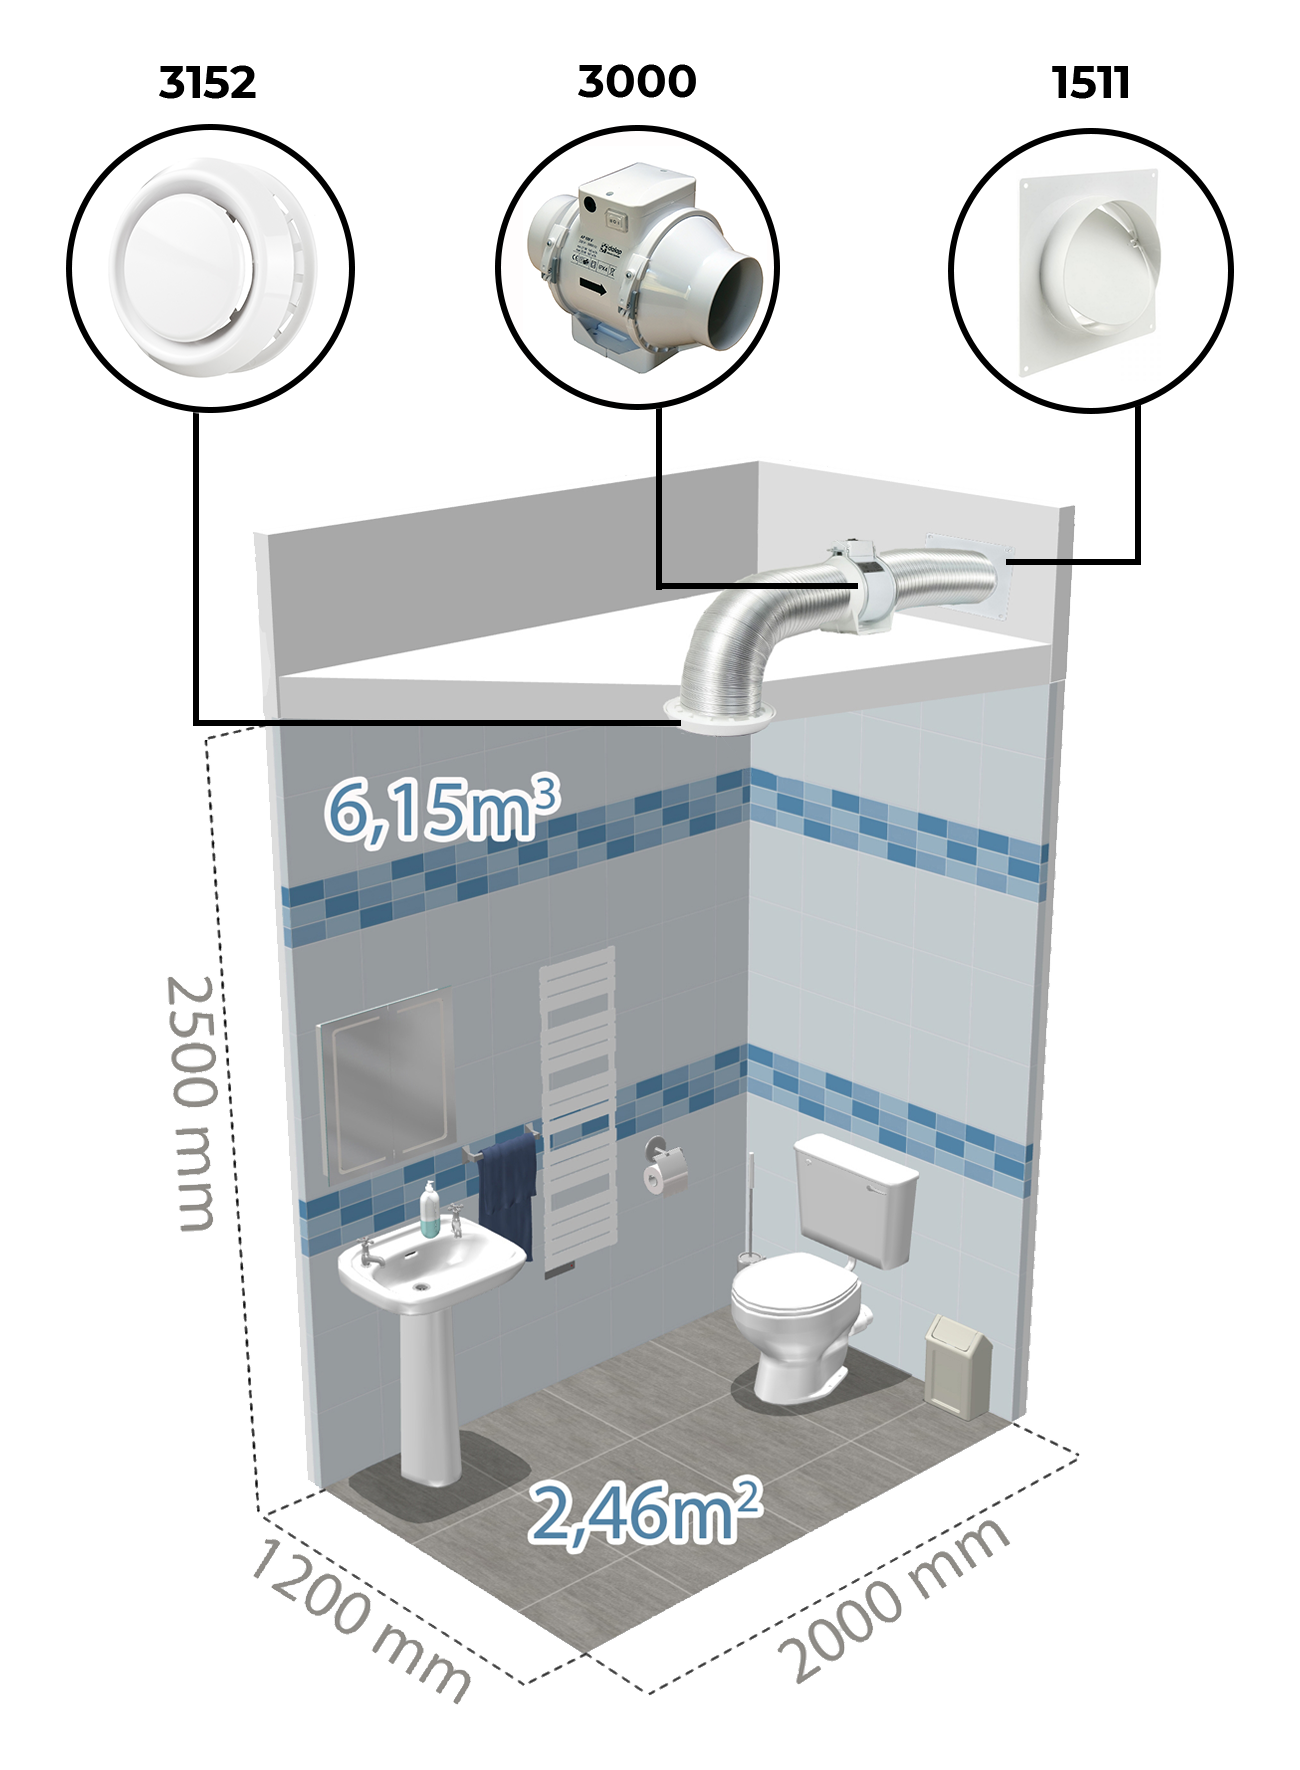 Příklad instalace vzduchotechniky na WC pomocí potrubního ventilátoru Dalap AP